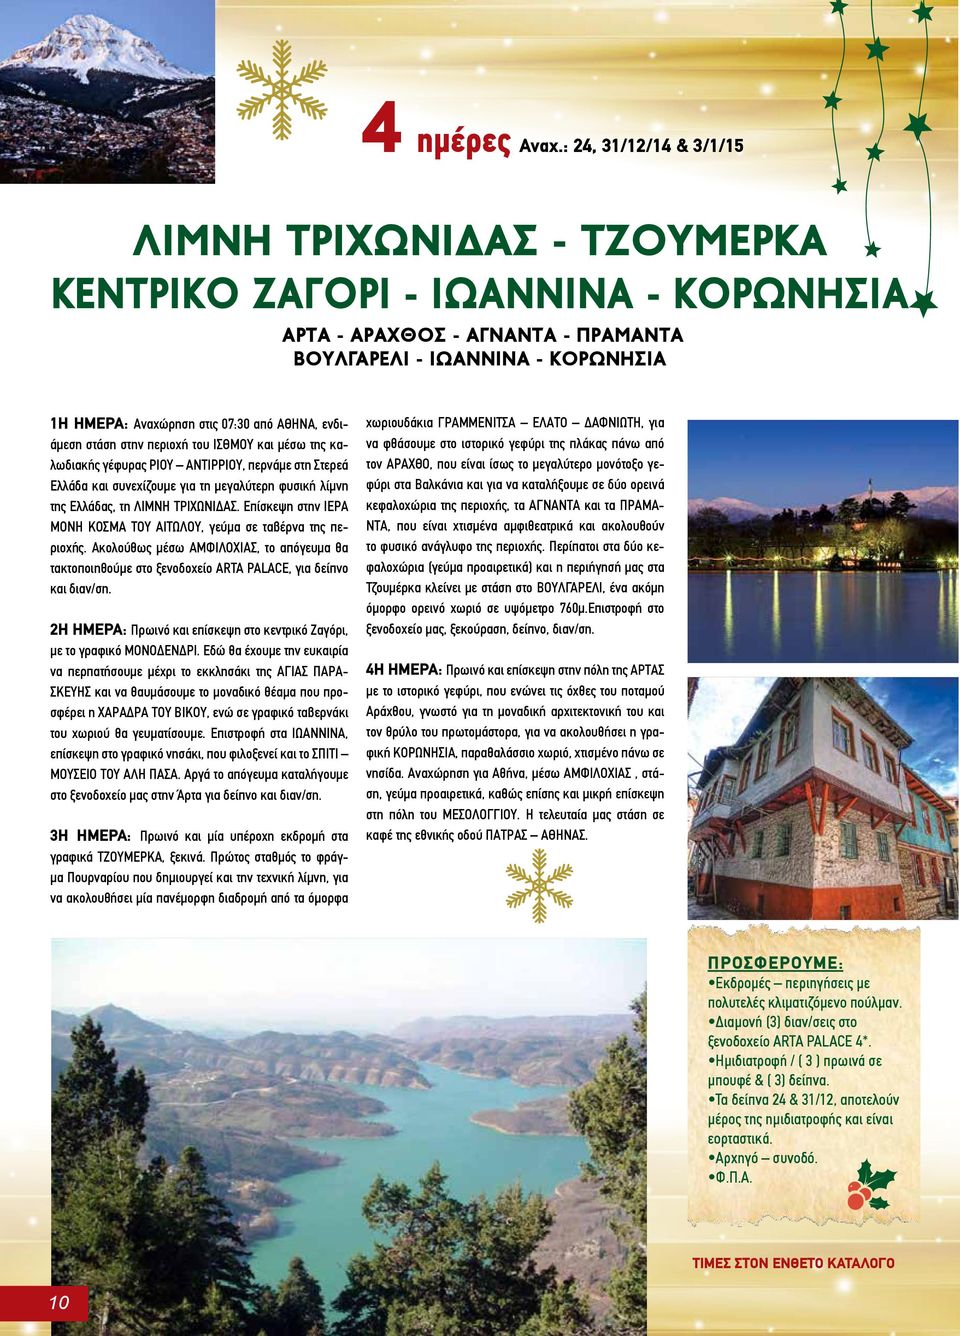 ΑΘΗΝΑ, ενδιάμεση στάση στην περιοχή του ΙΣΘΜΟΥ και μέσω της καλωδιακής γέφυρας ΡΙΟΥ ΑΝΤΙΡΡΙΟΥ, περνάμε στη Στερεά Ελλάδα και συνεχίζουμε για τη μεγαλύτερη φυσική λίμνη της Ελλάδας, τη ΛΙΜΝΗ